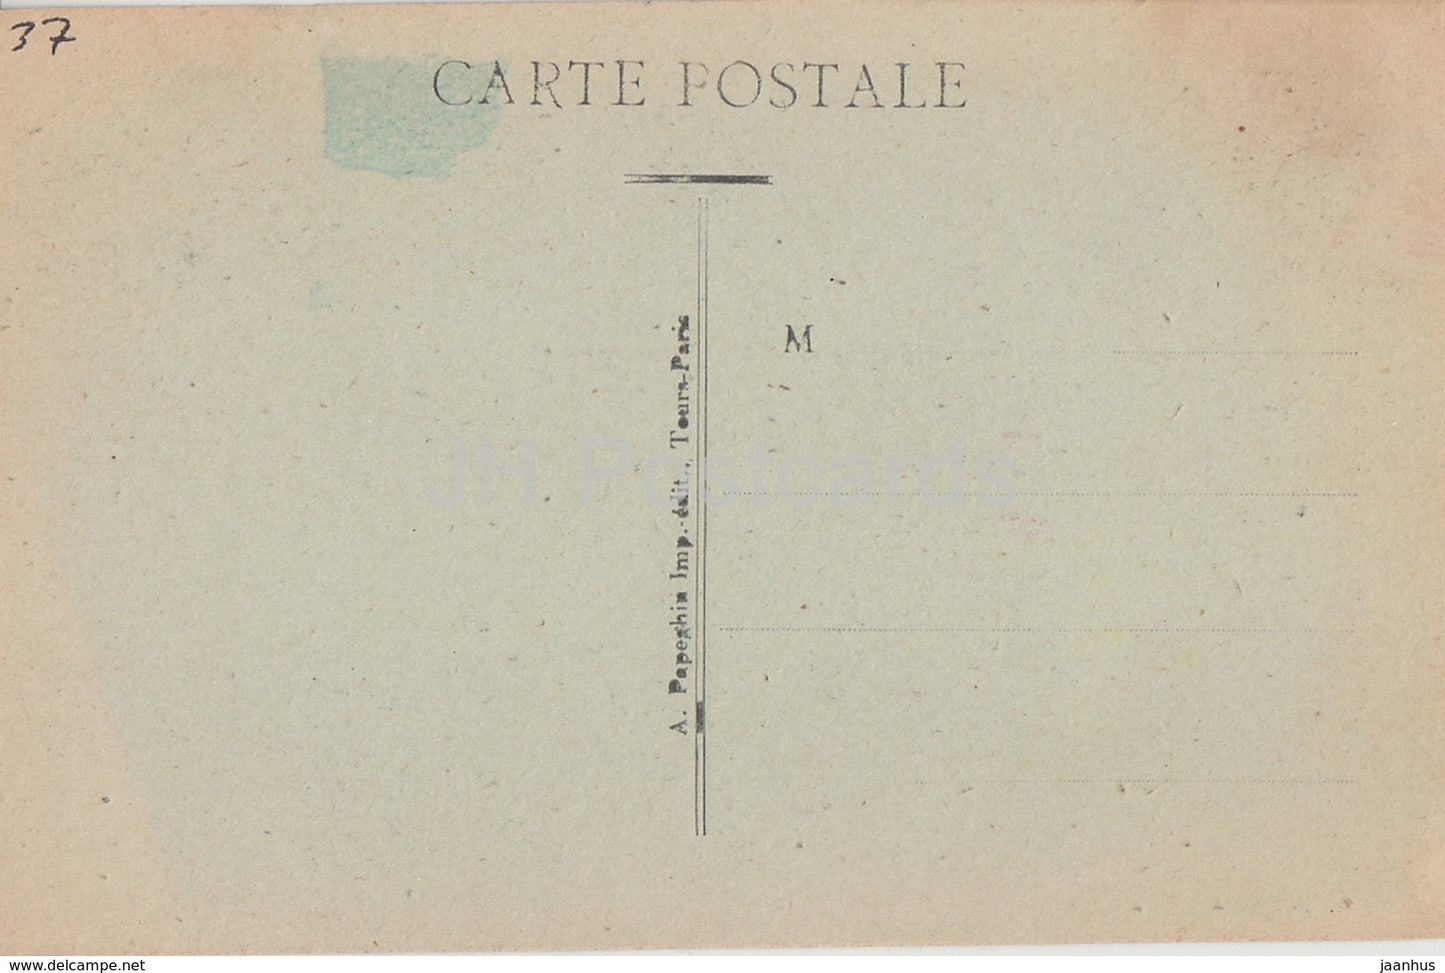 Cinq Mars - Les Snisses du Chateau - Schloss - 2 - alte Postkarte - Frankreich - unbenutzt